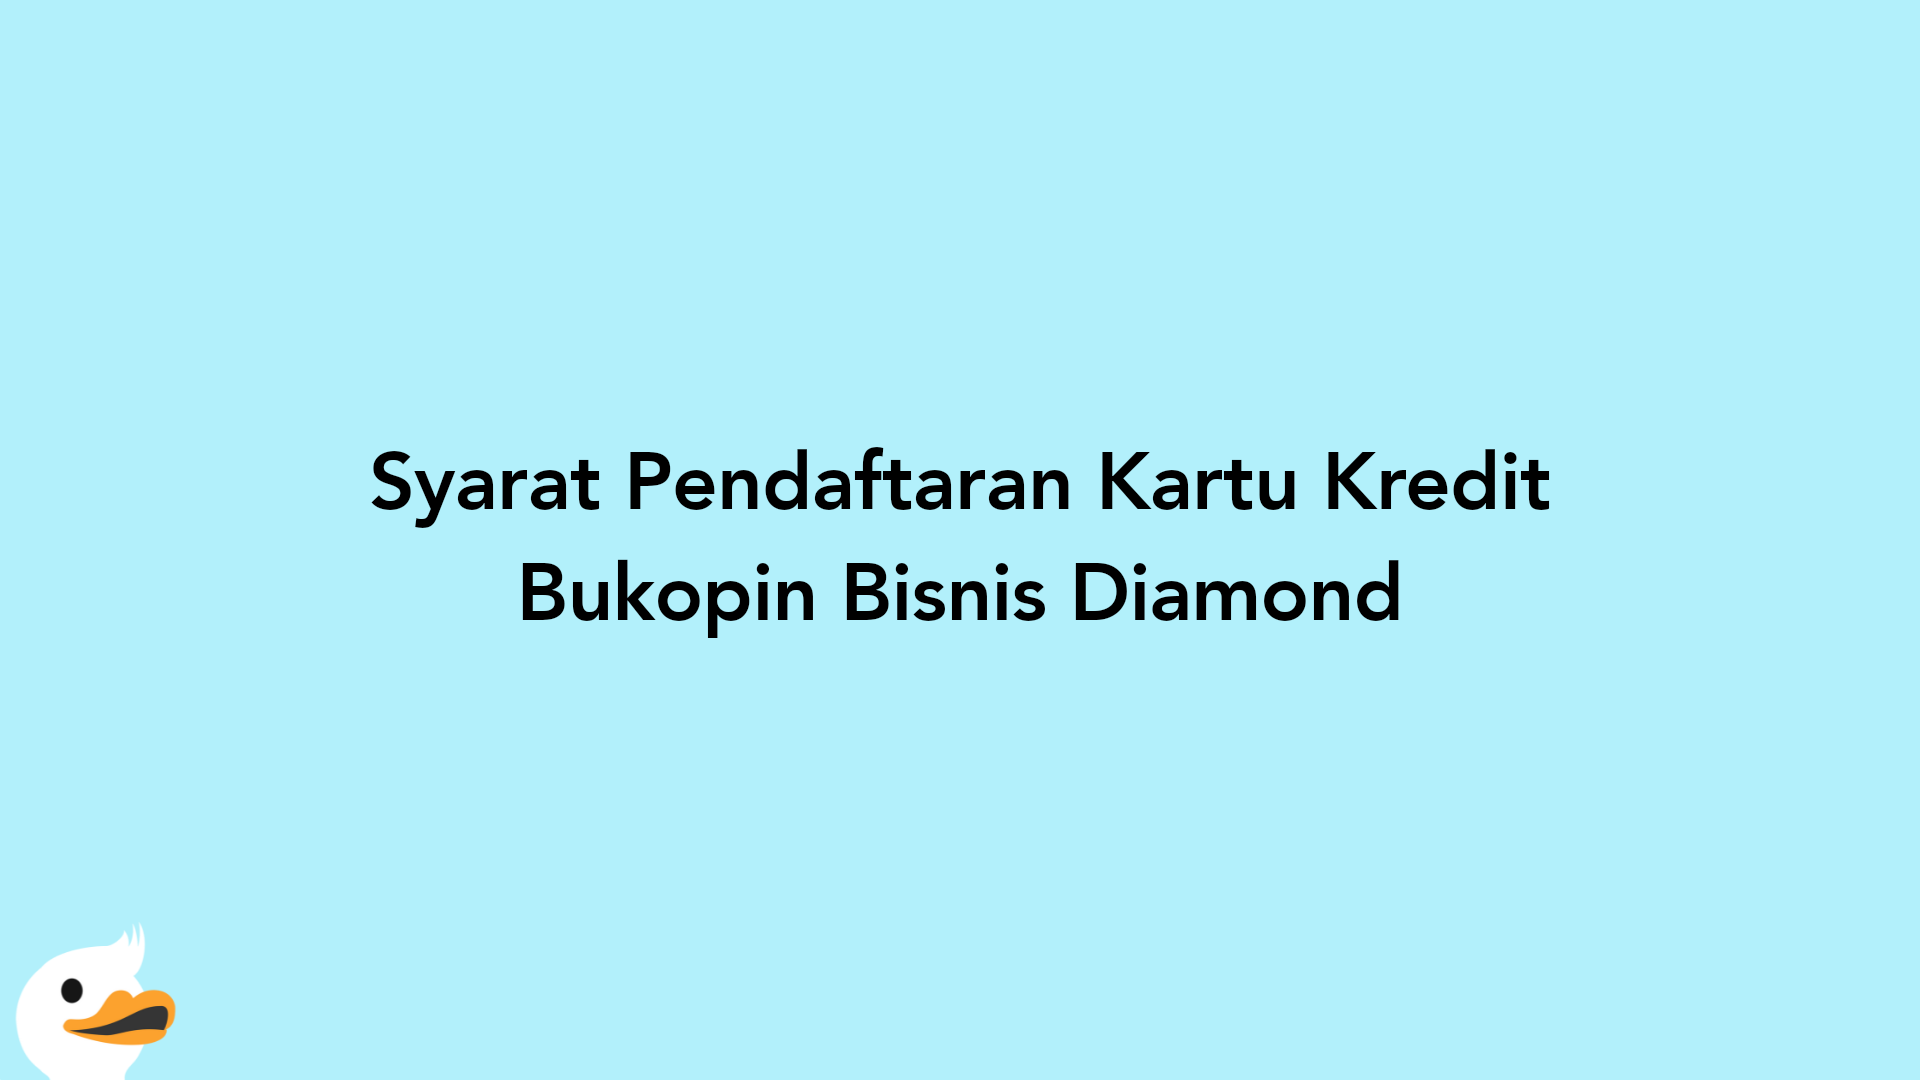 Syarat Pendaftaran Kartu Kredit Bukopin Bisnis Diamond